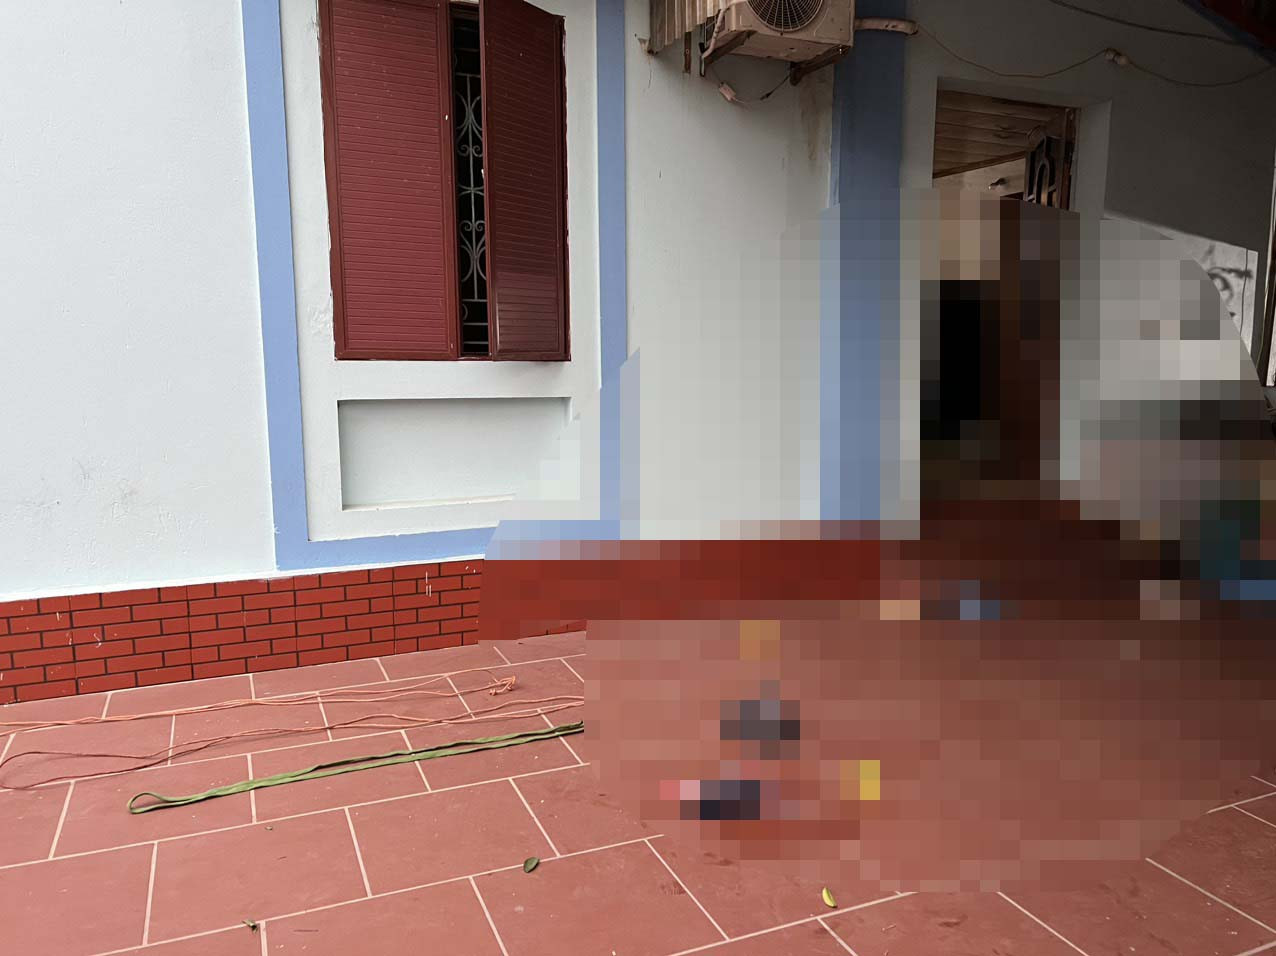 Bắc Giang: Điều tra vụ án mạng khiến 3 người thương vong